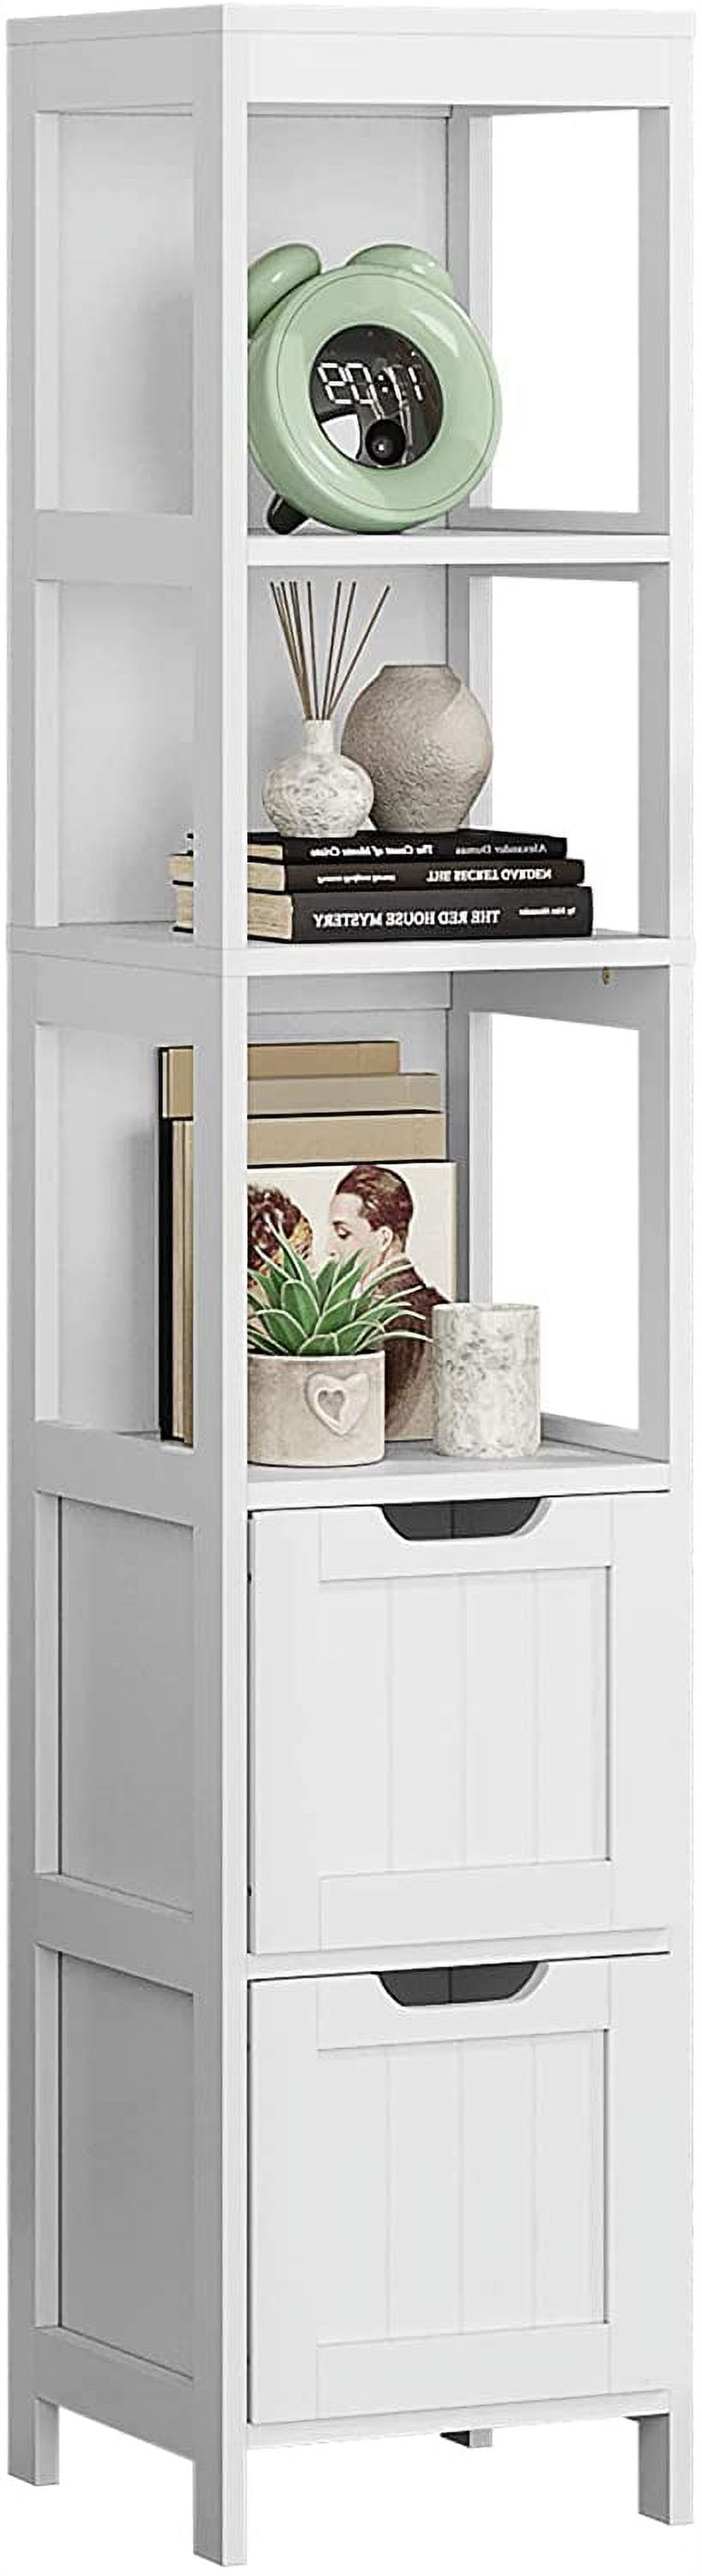 Tall Bathroom Storage Cabinet, Freestanding Linen Tower Slim Organizer,  White, 1 Unit - Kroger